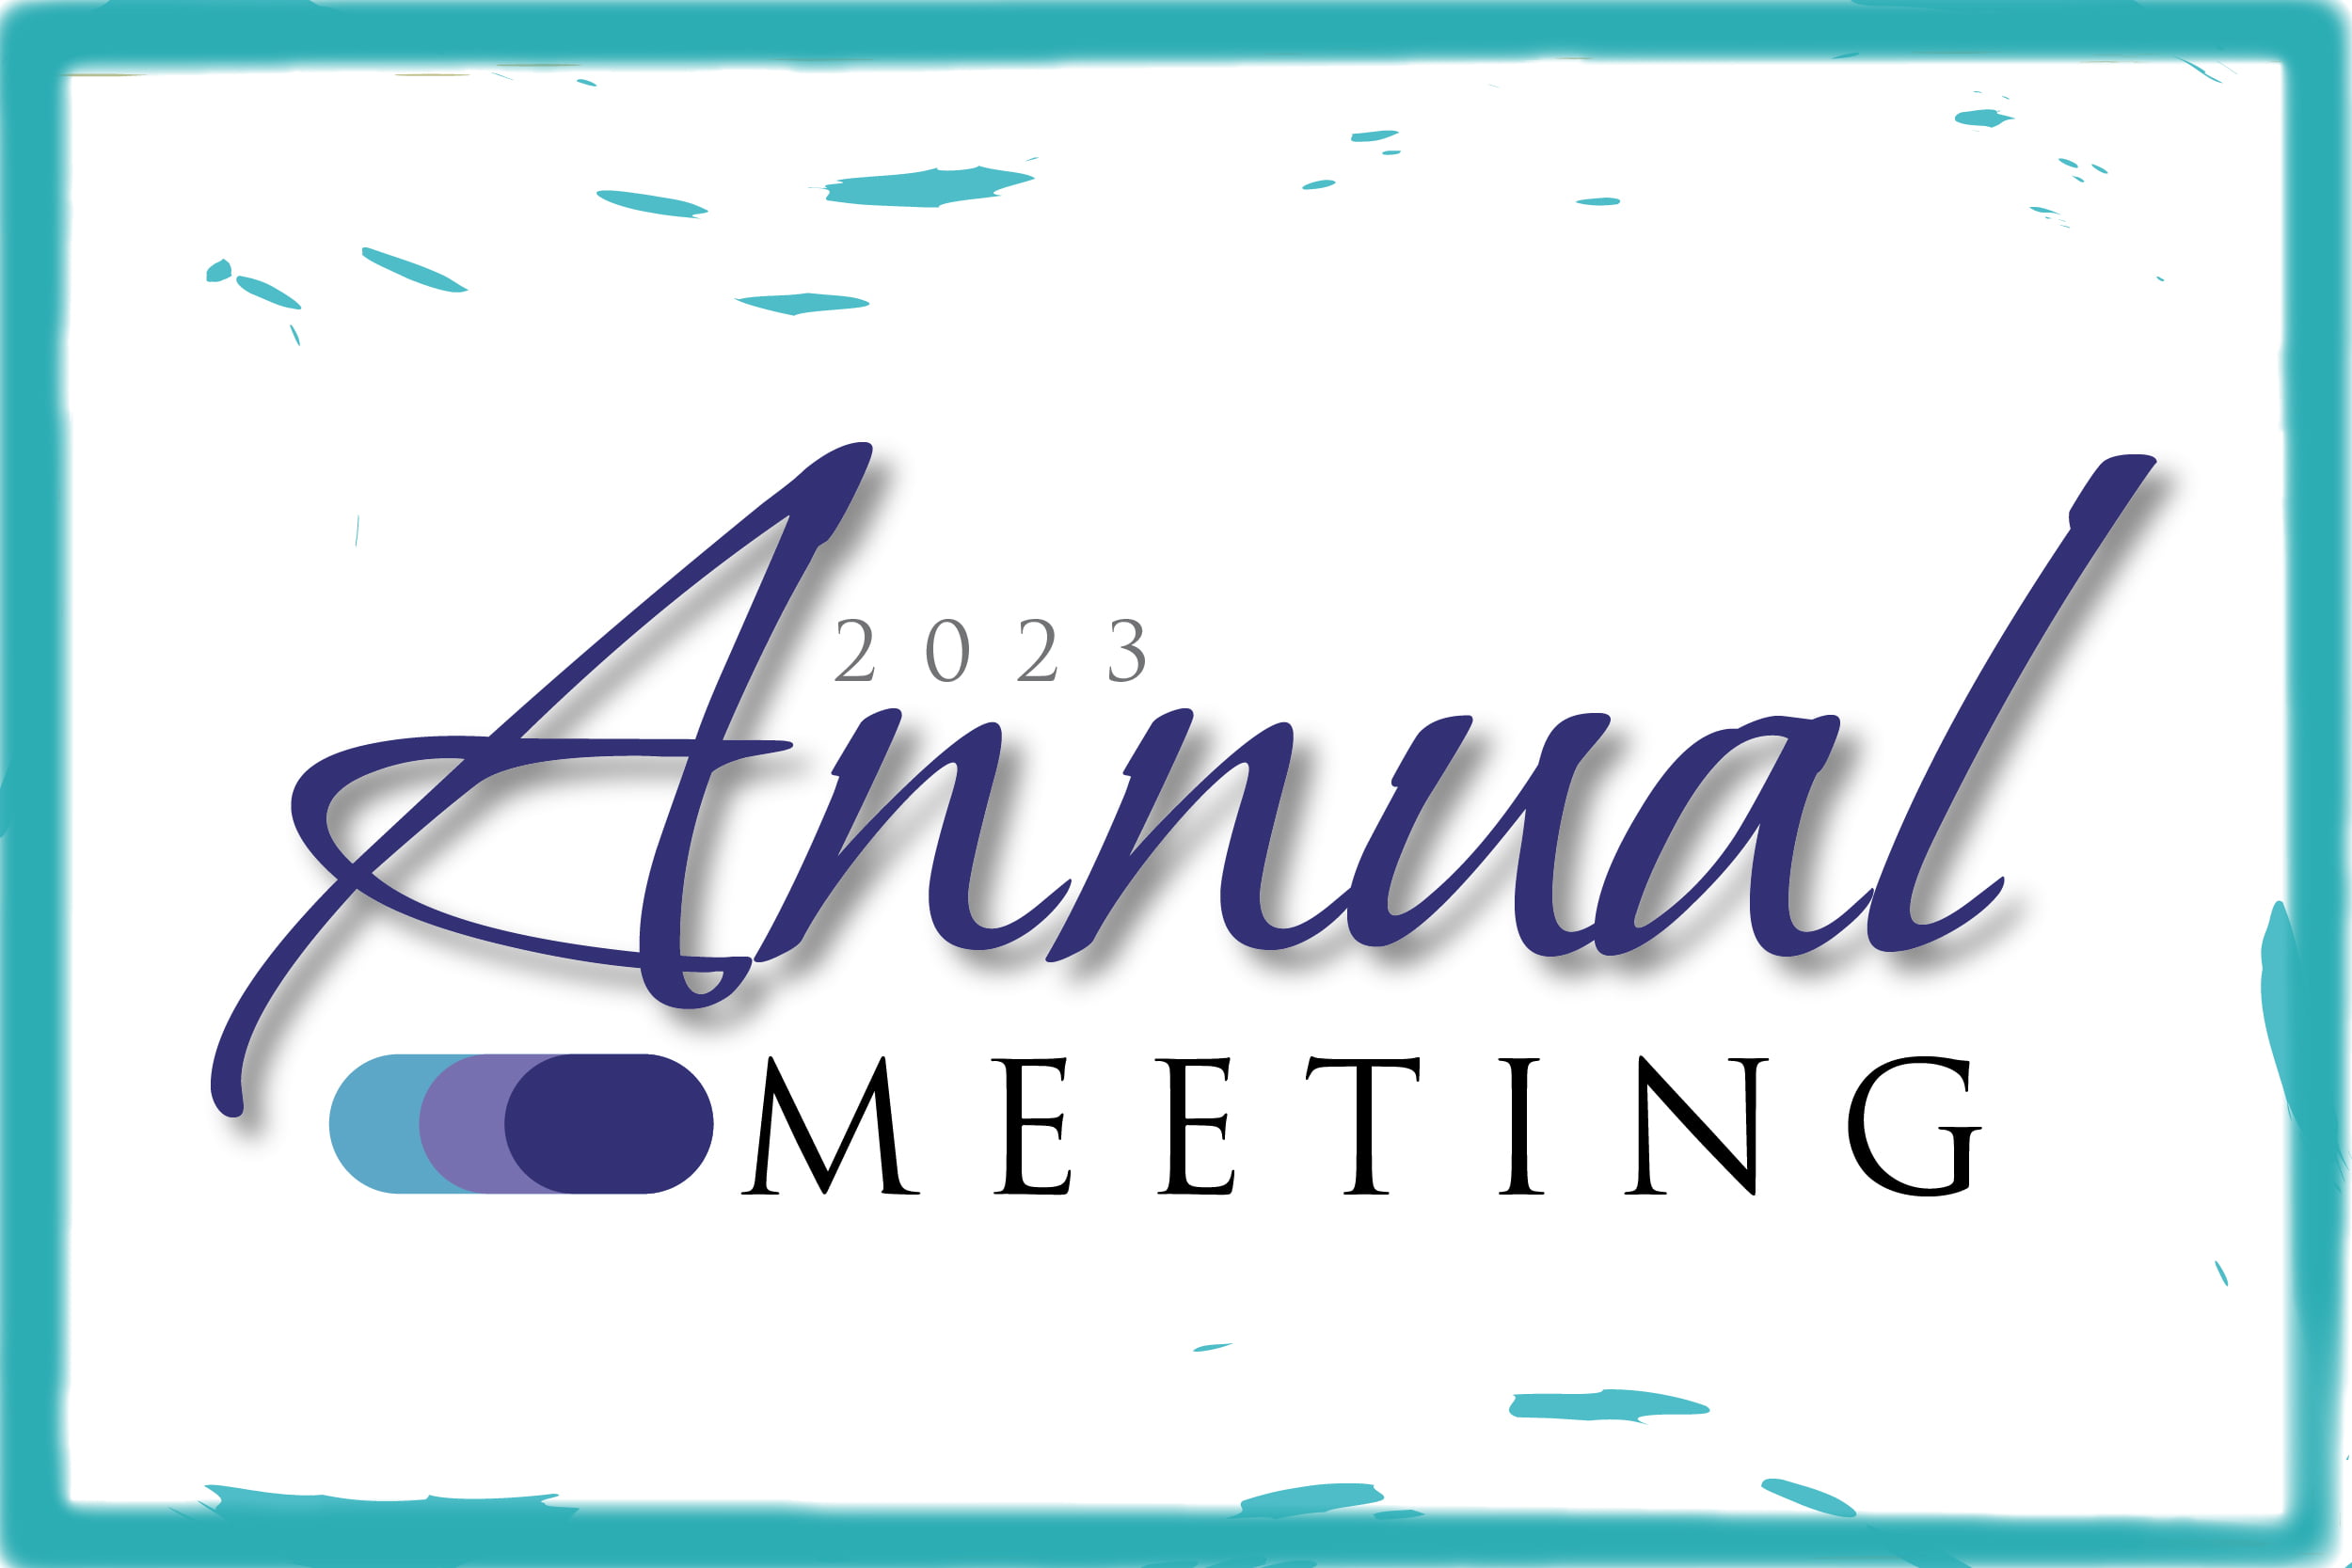 Annual Meeting header